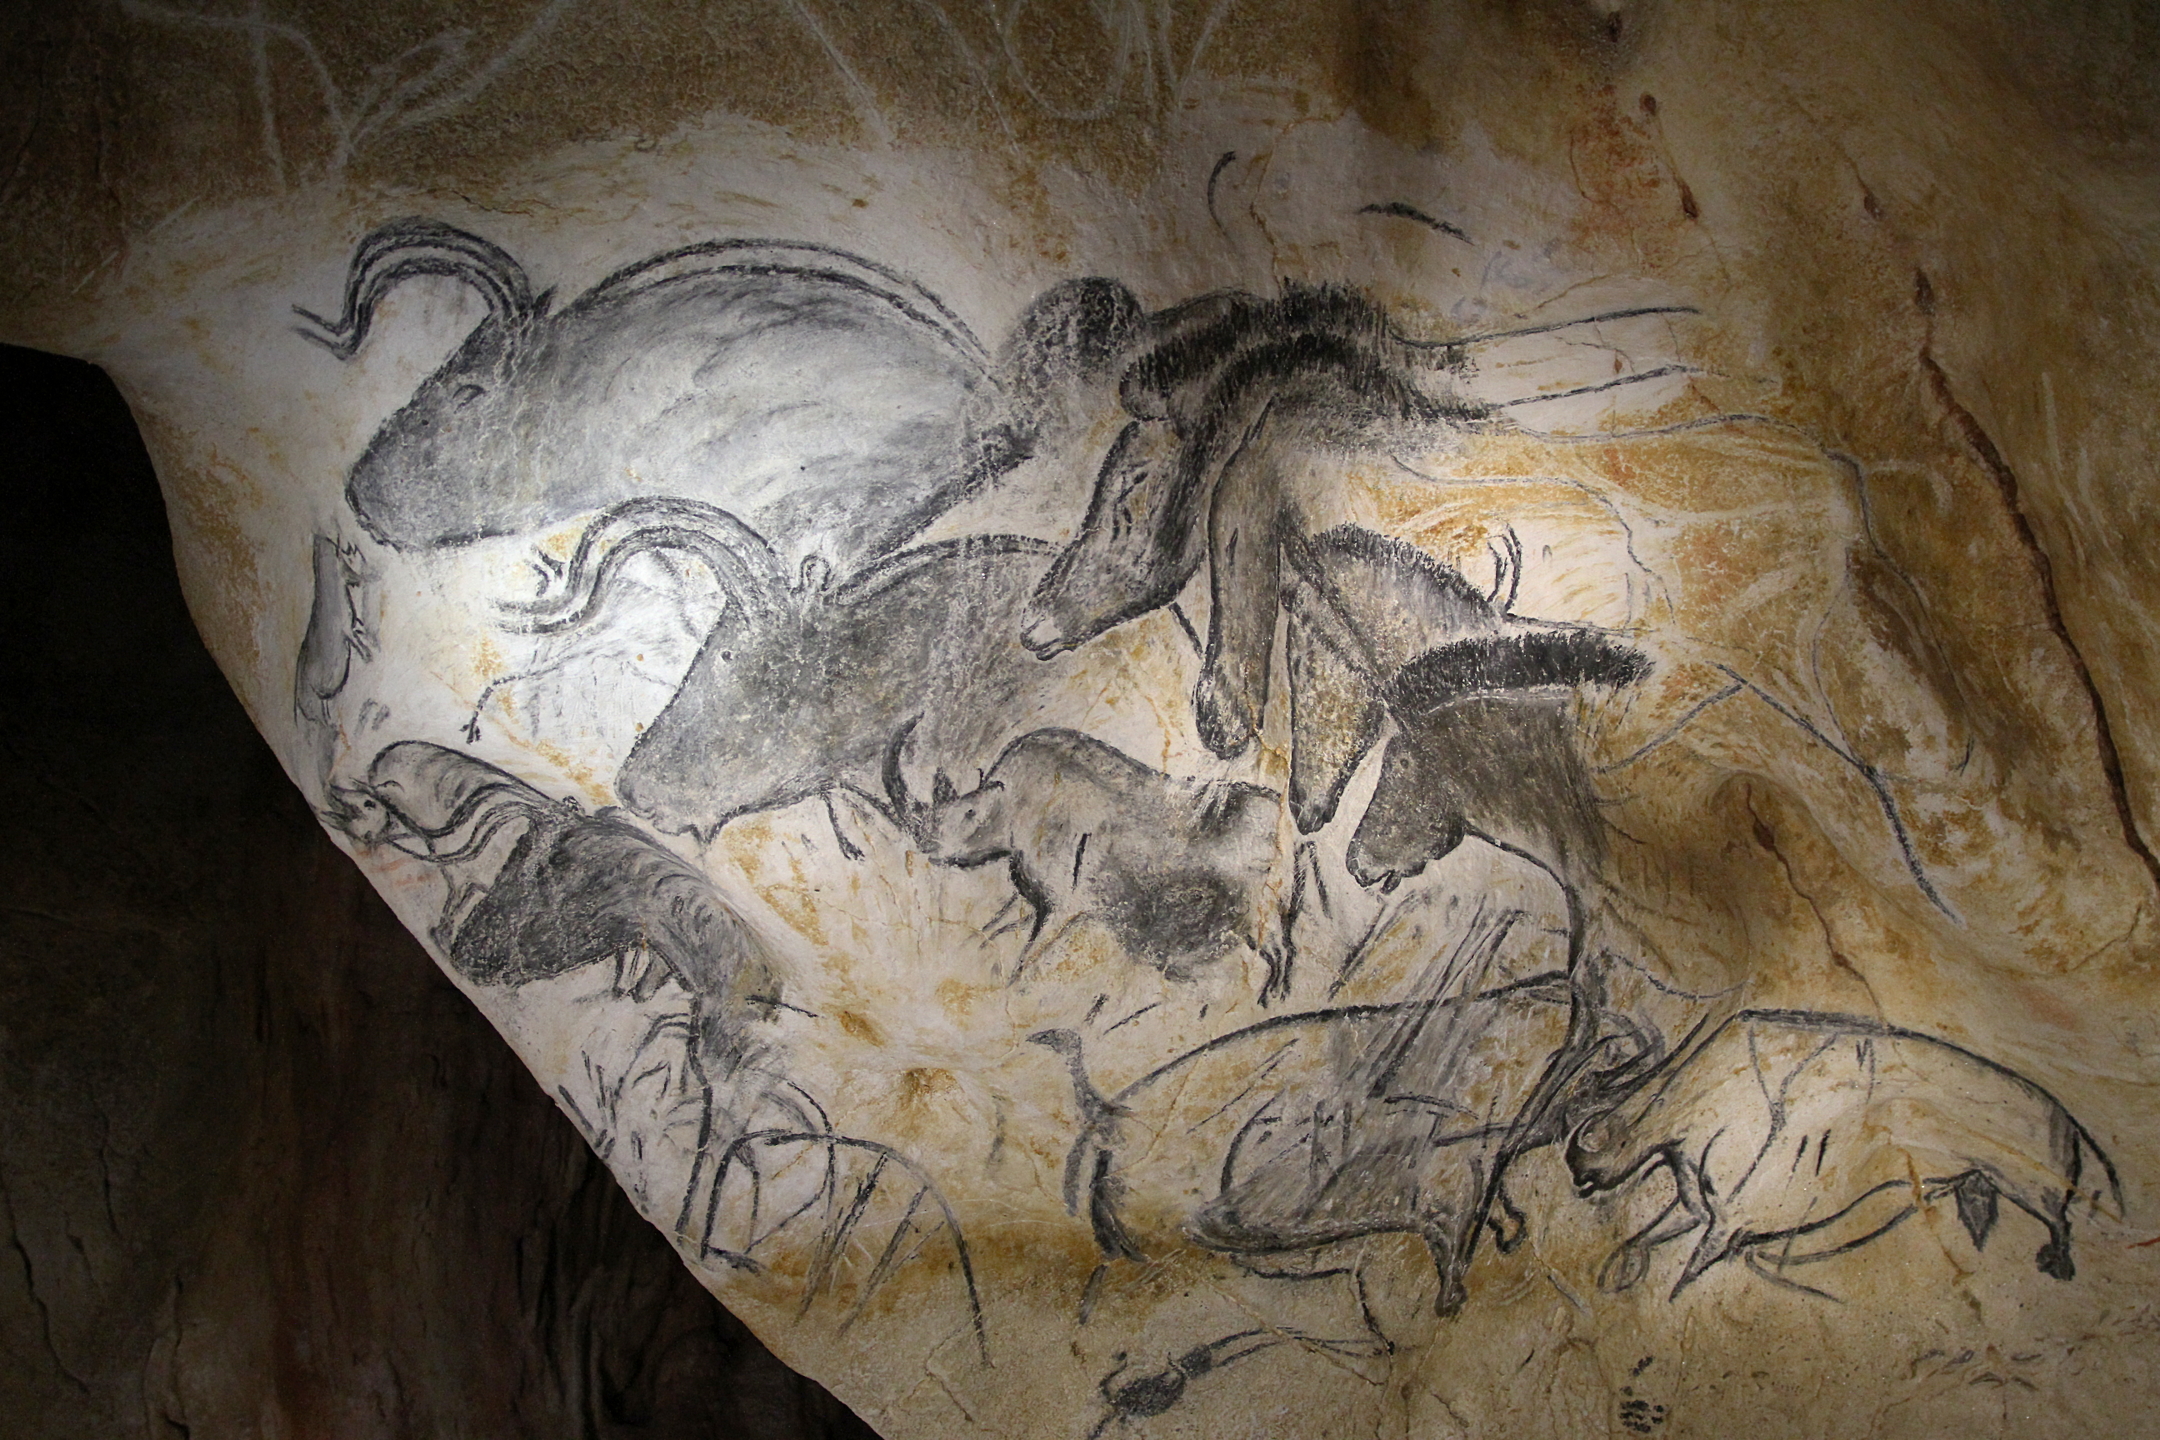 Chauvet Cave (Detail of horses). (Ardèdeche, France). Photo by Claude Valette, CC BY-ND 2.0.